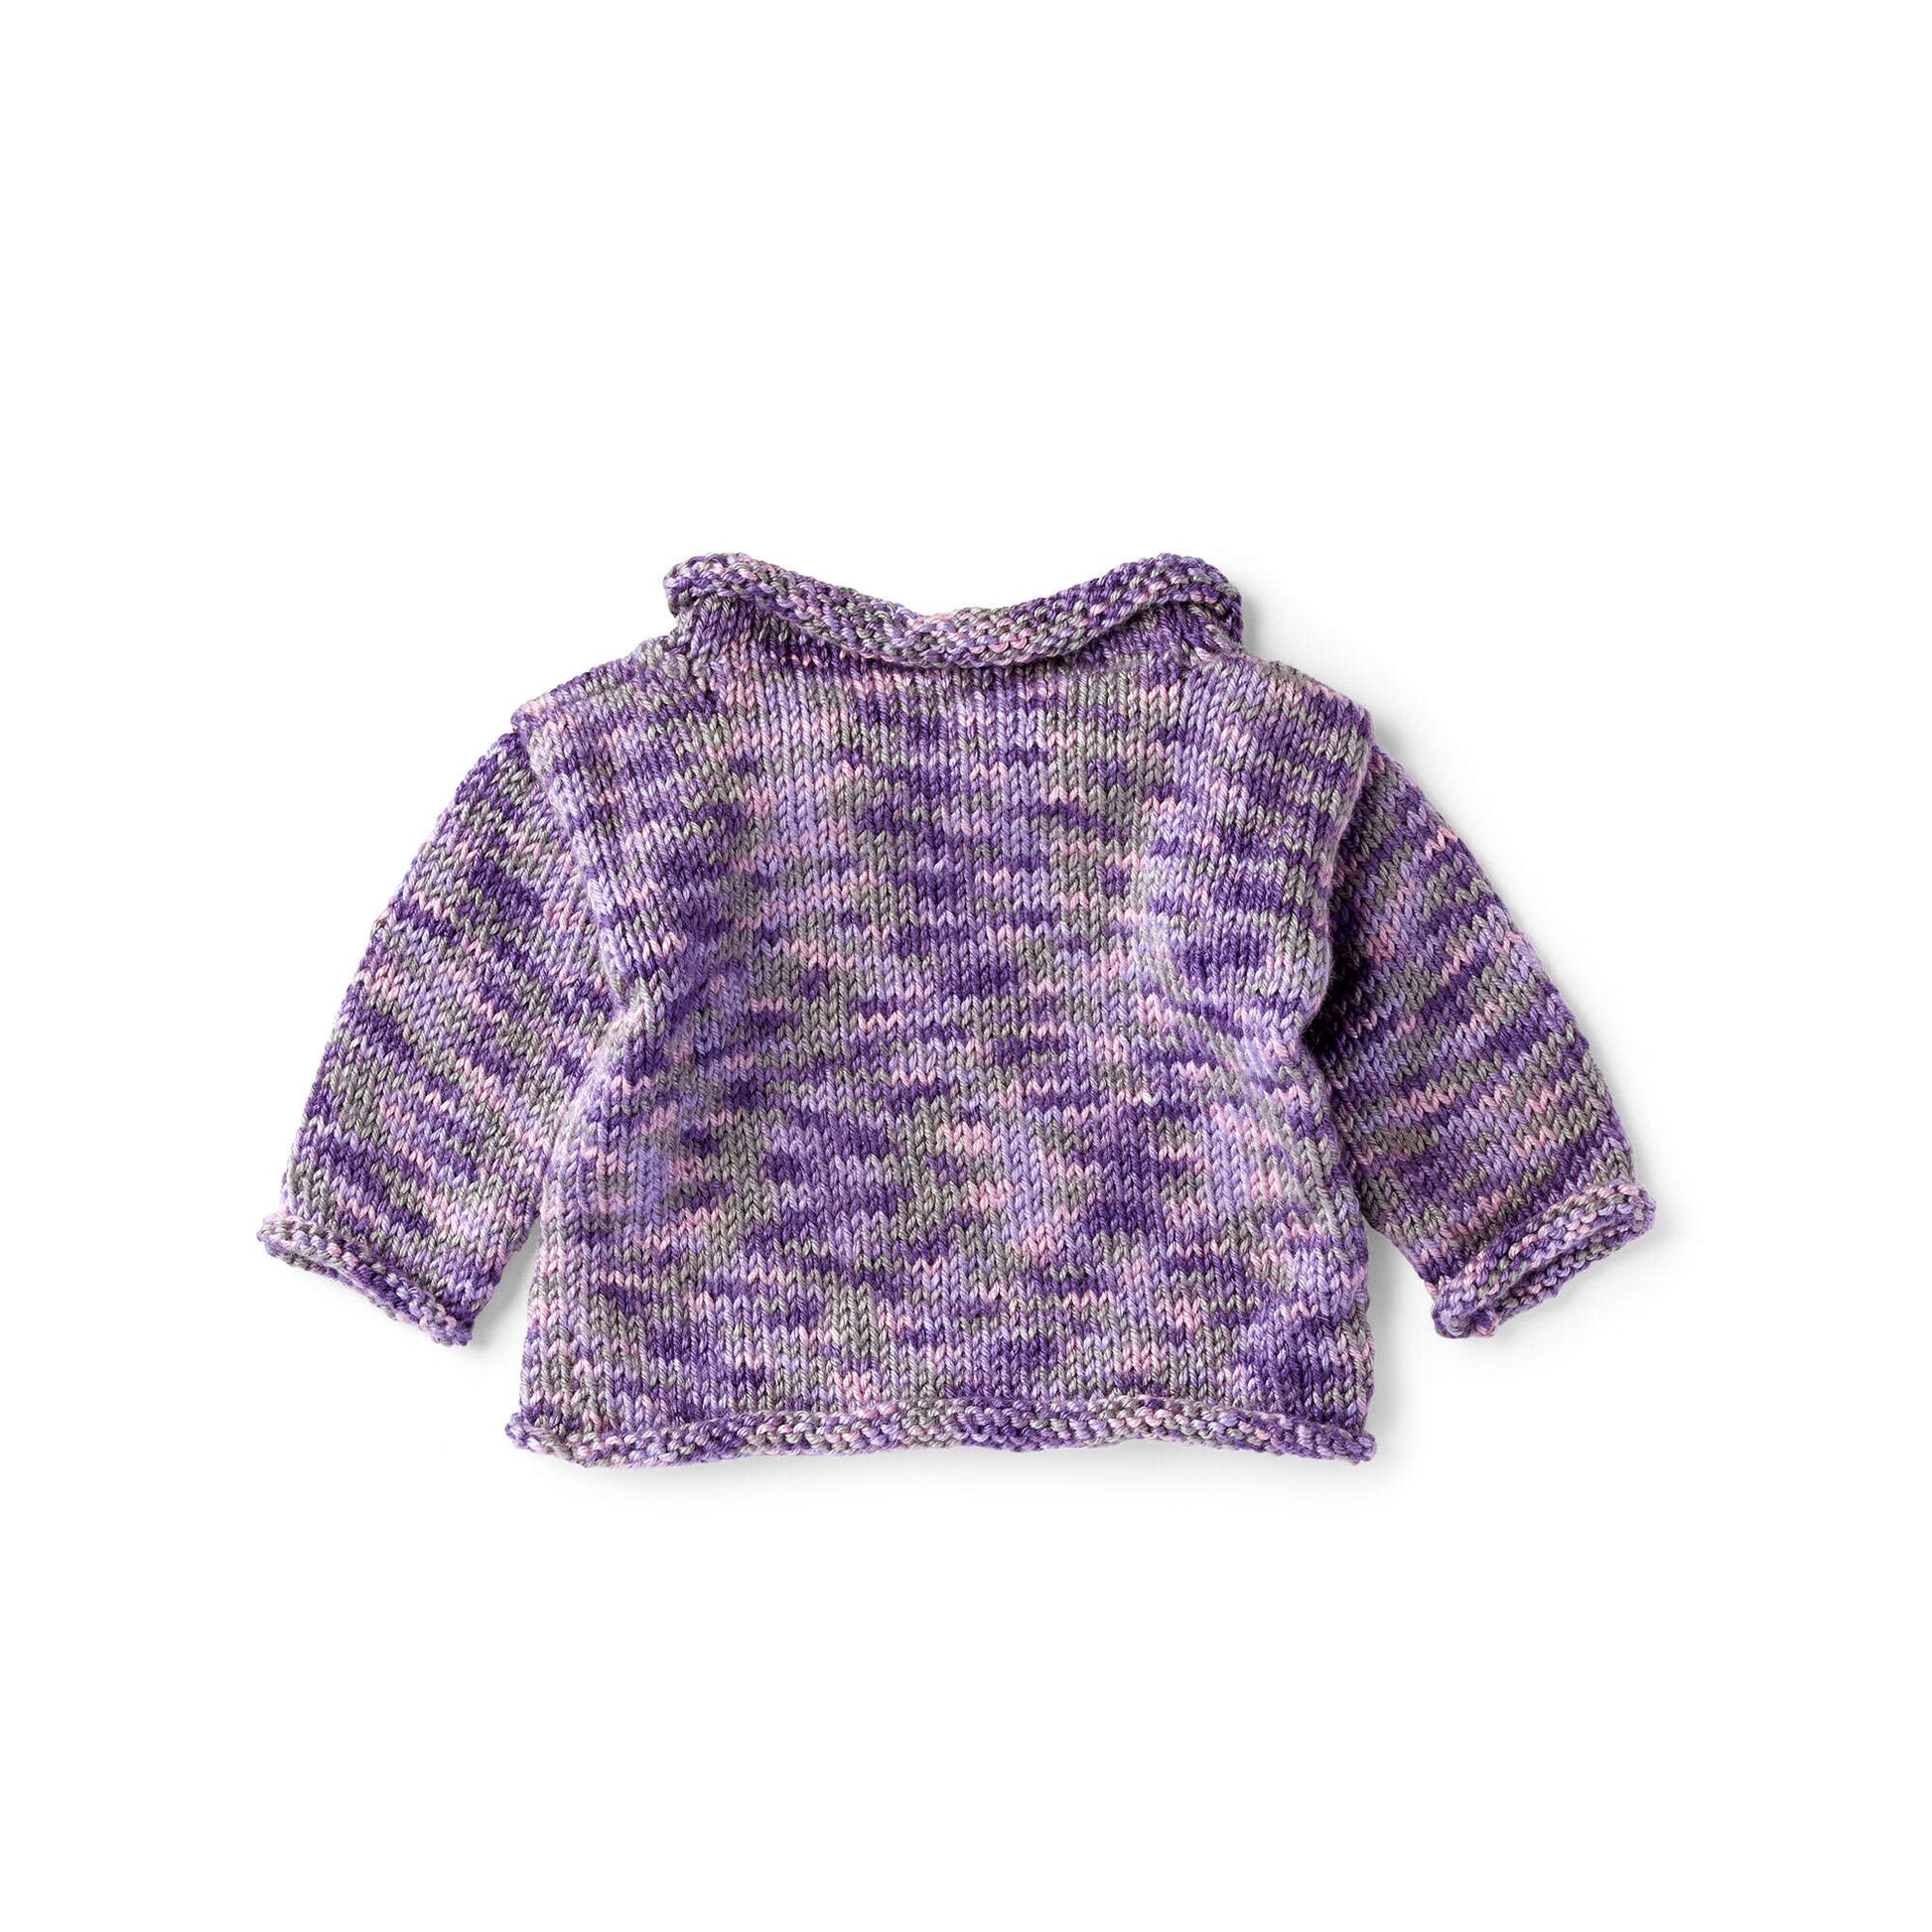 Free Red Heart Sweet Little Sweater Knit Pattern